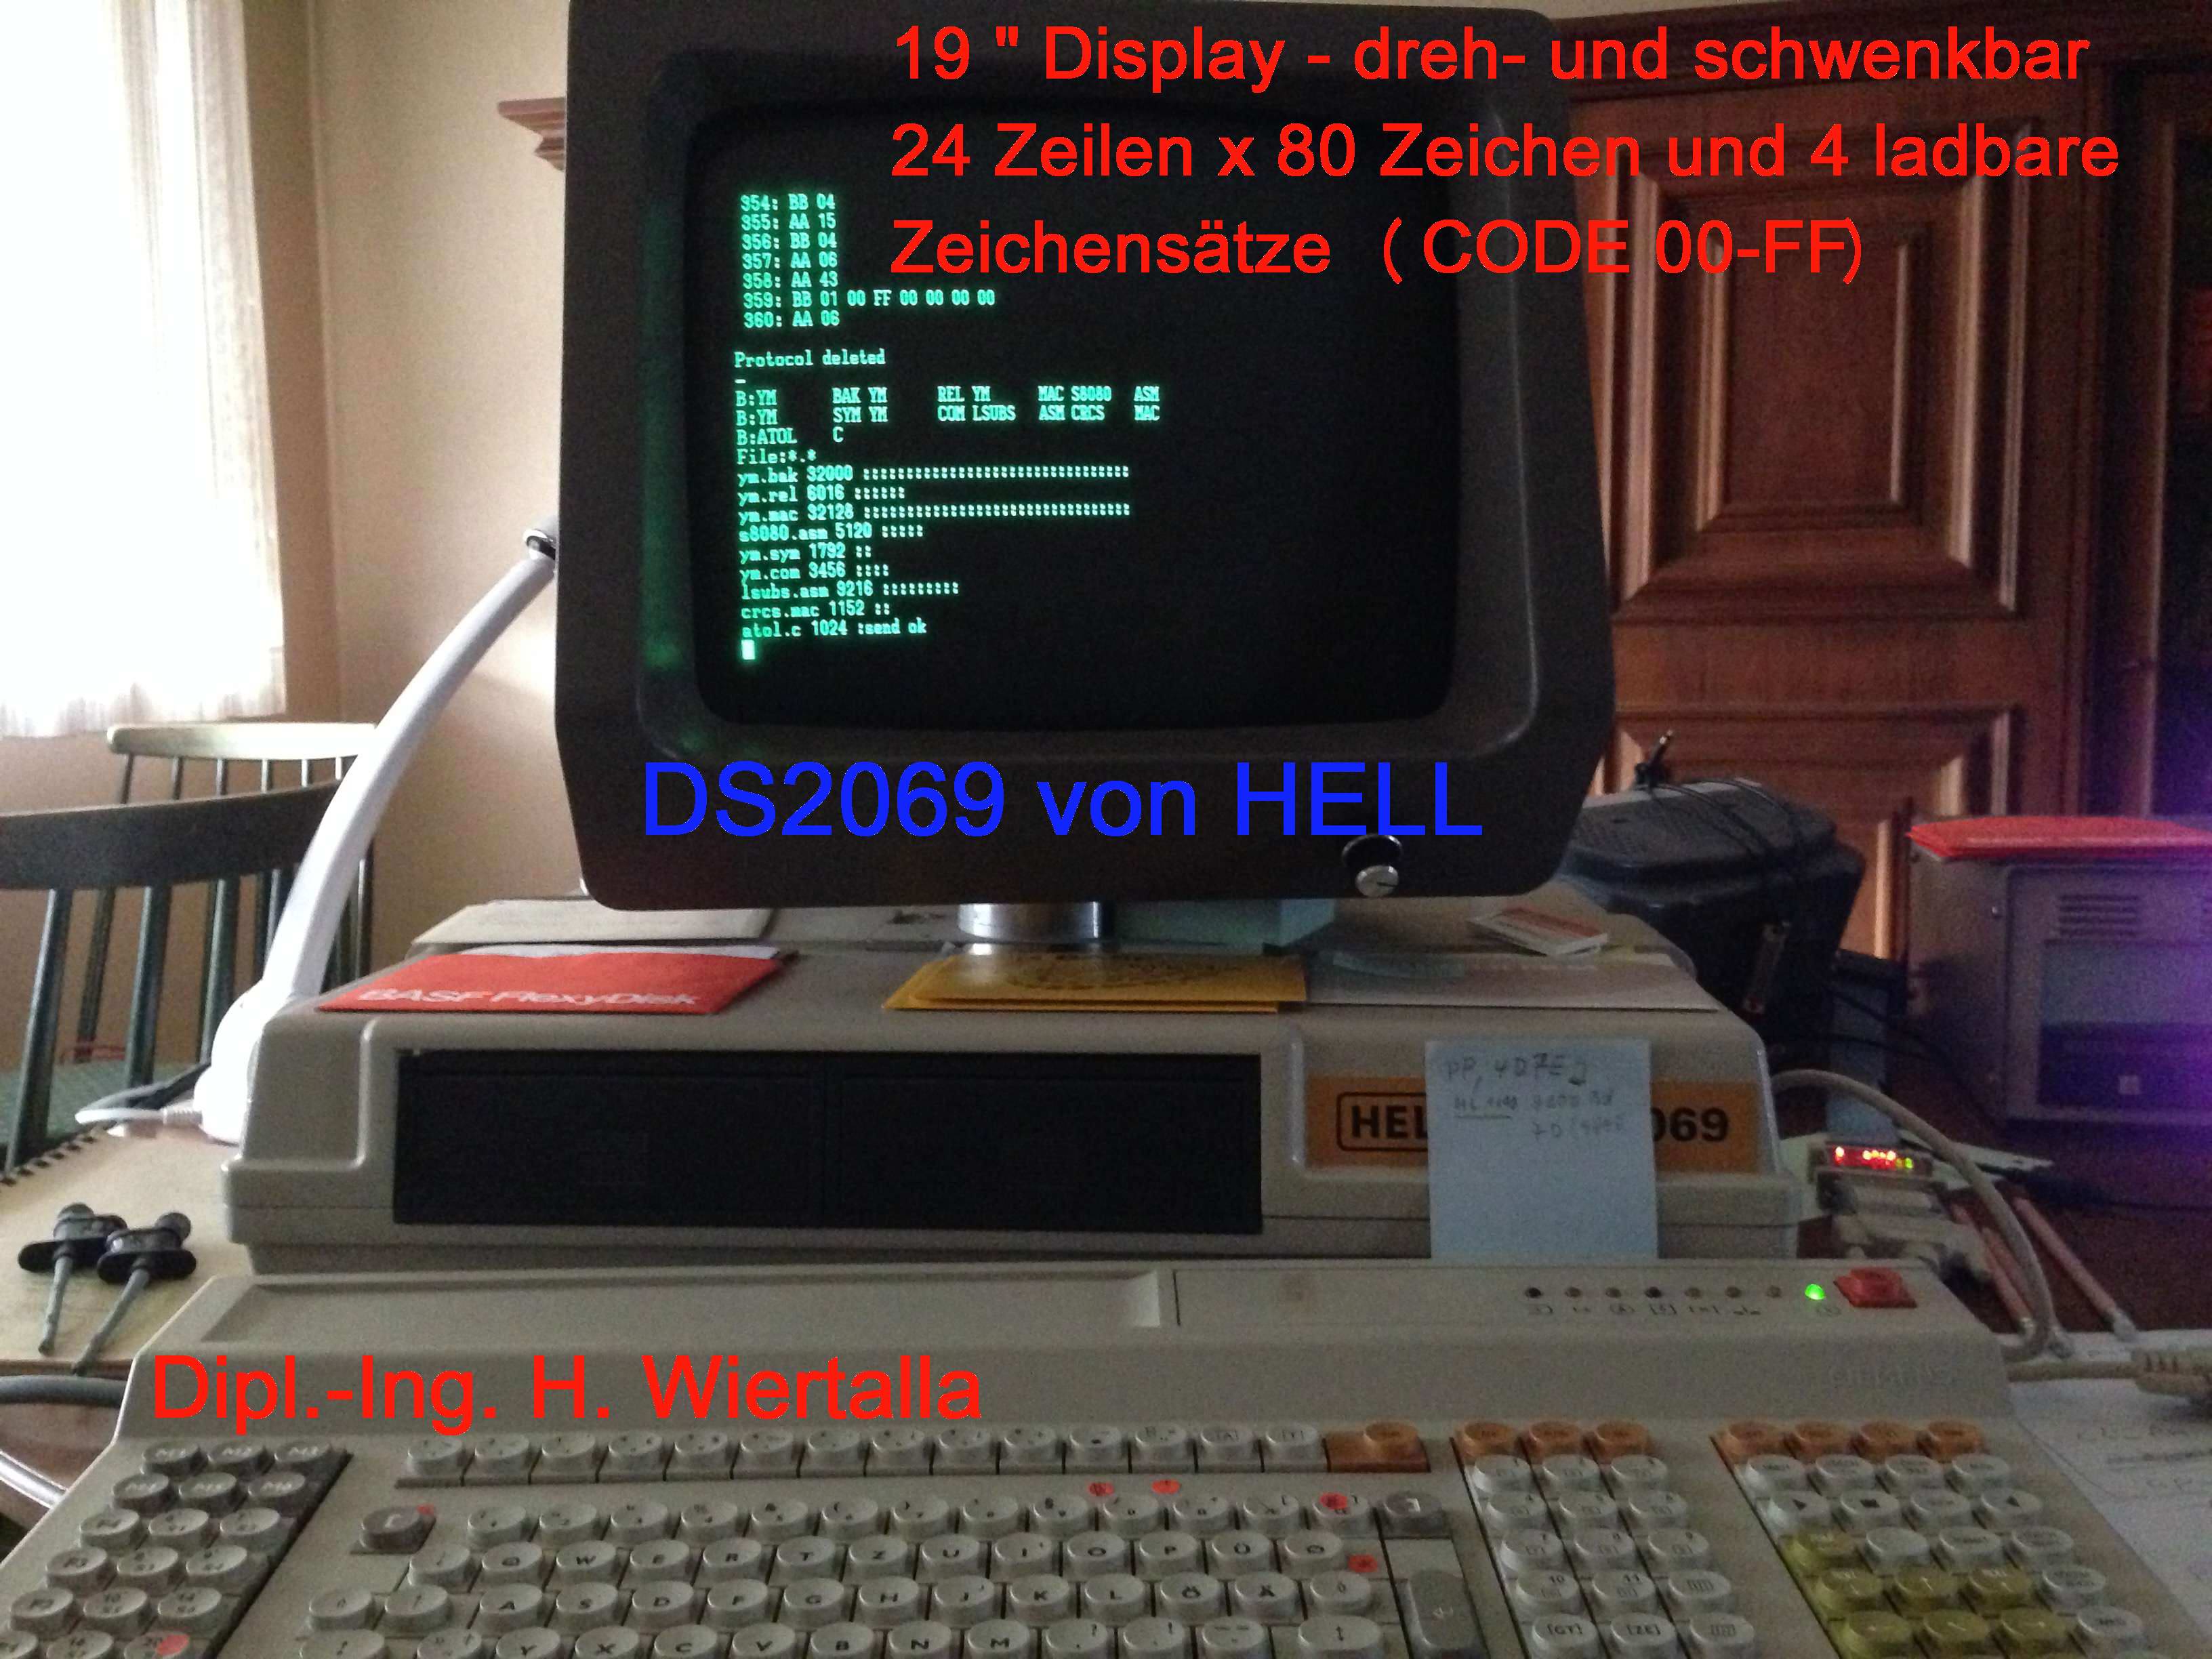 DS2069 cp/m Datensichtgeraet.